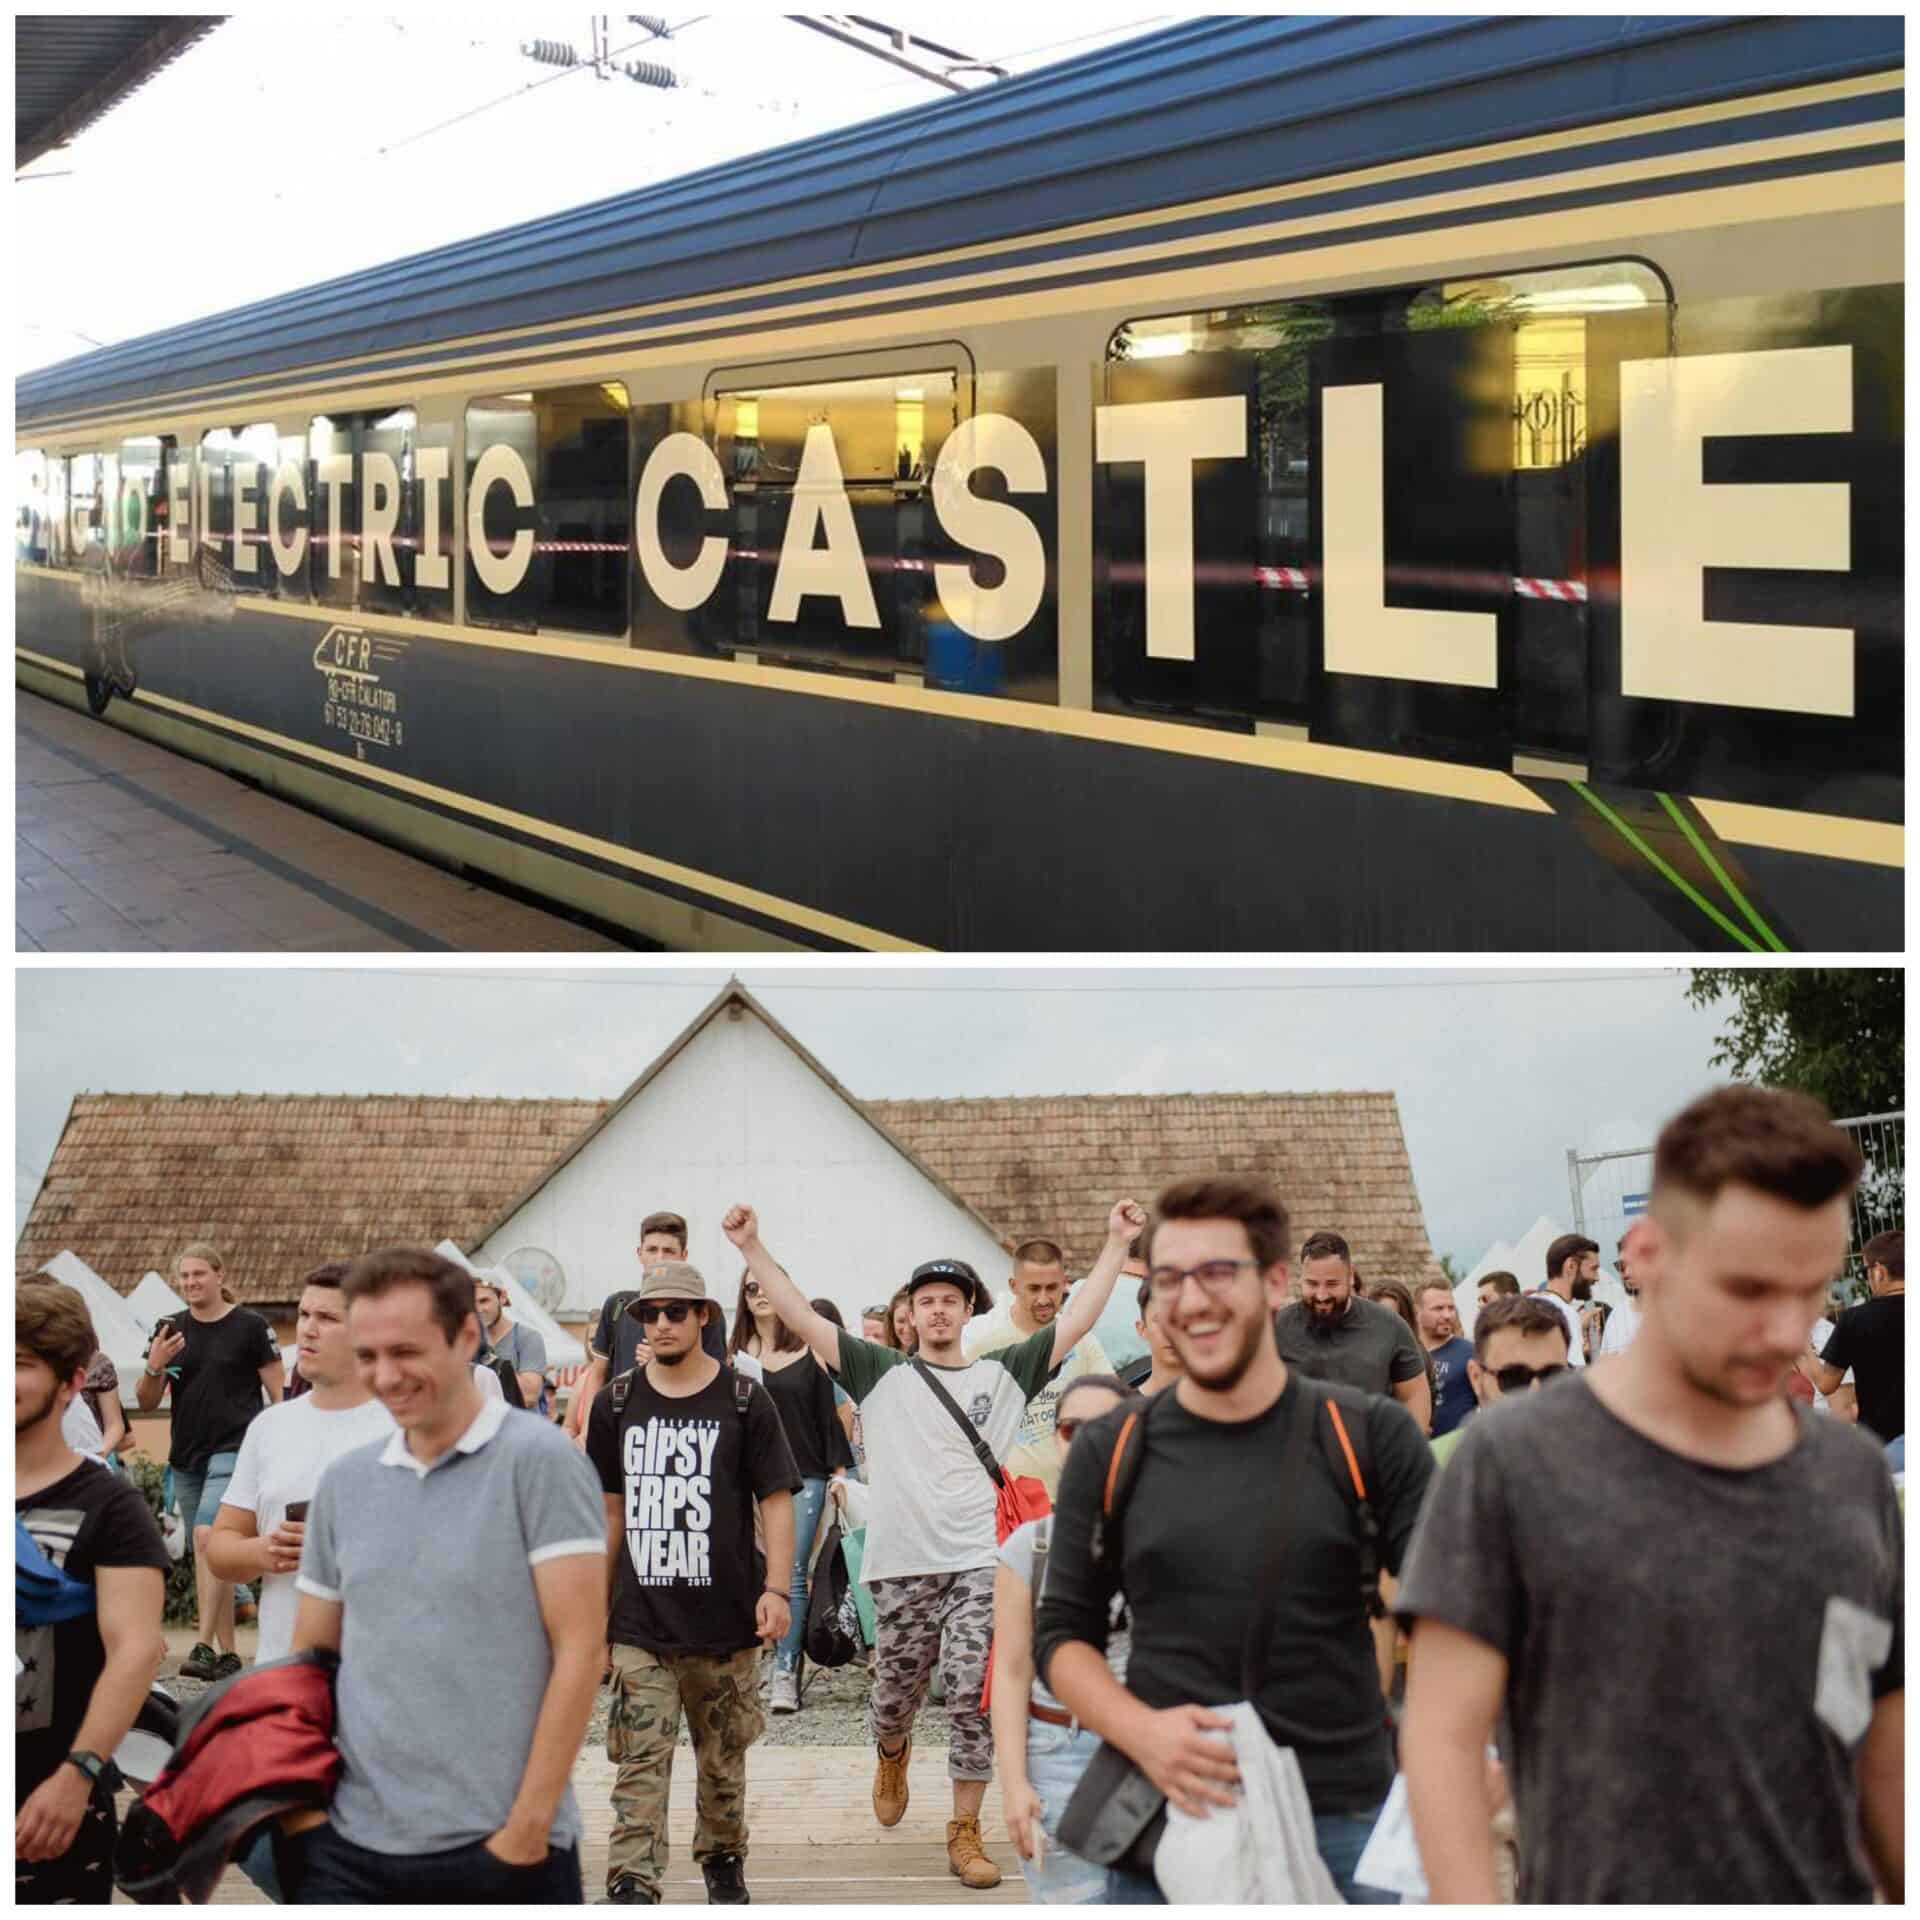 Opțiunile de transport în comun au fost extinse și îmbunătățite pentru a evita aglomerația la festivalul Electric Castle.